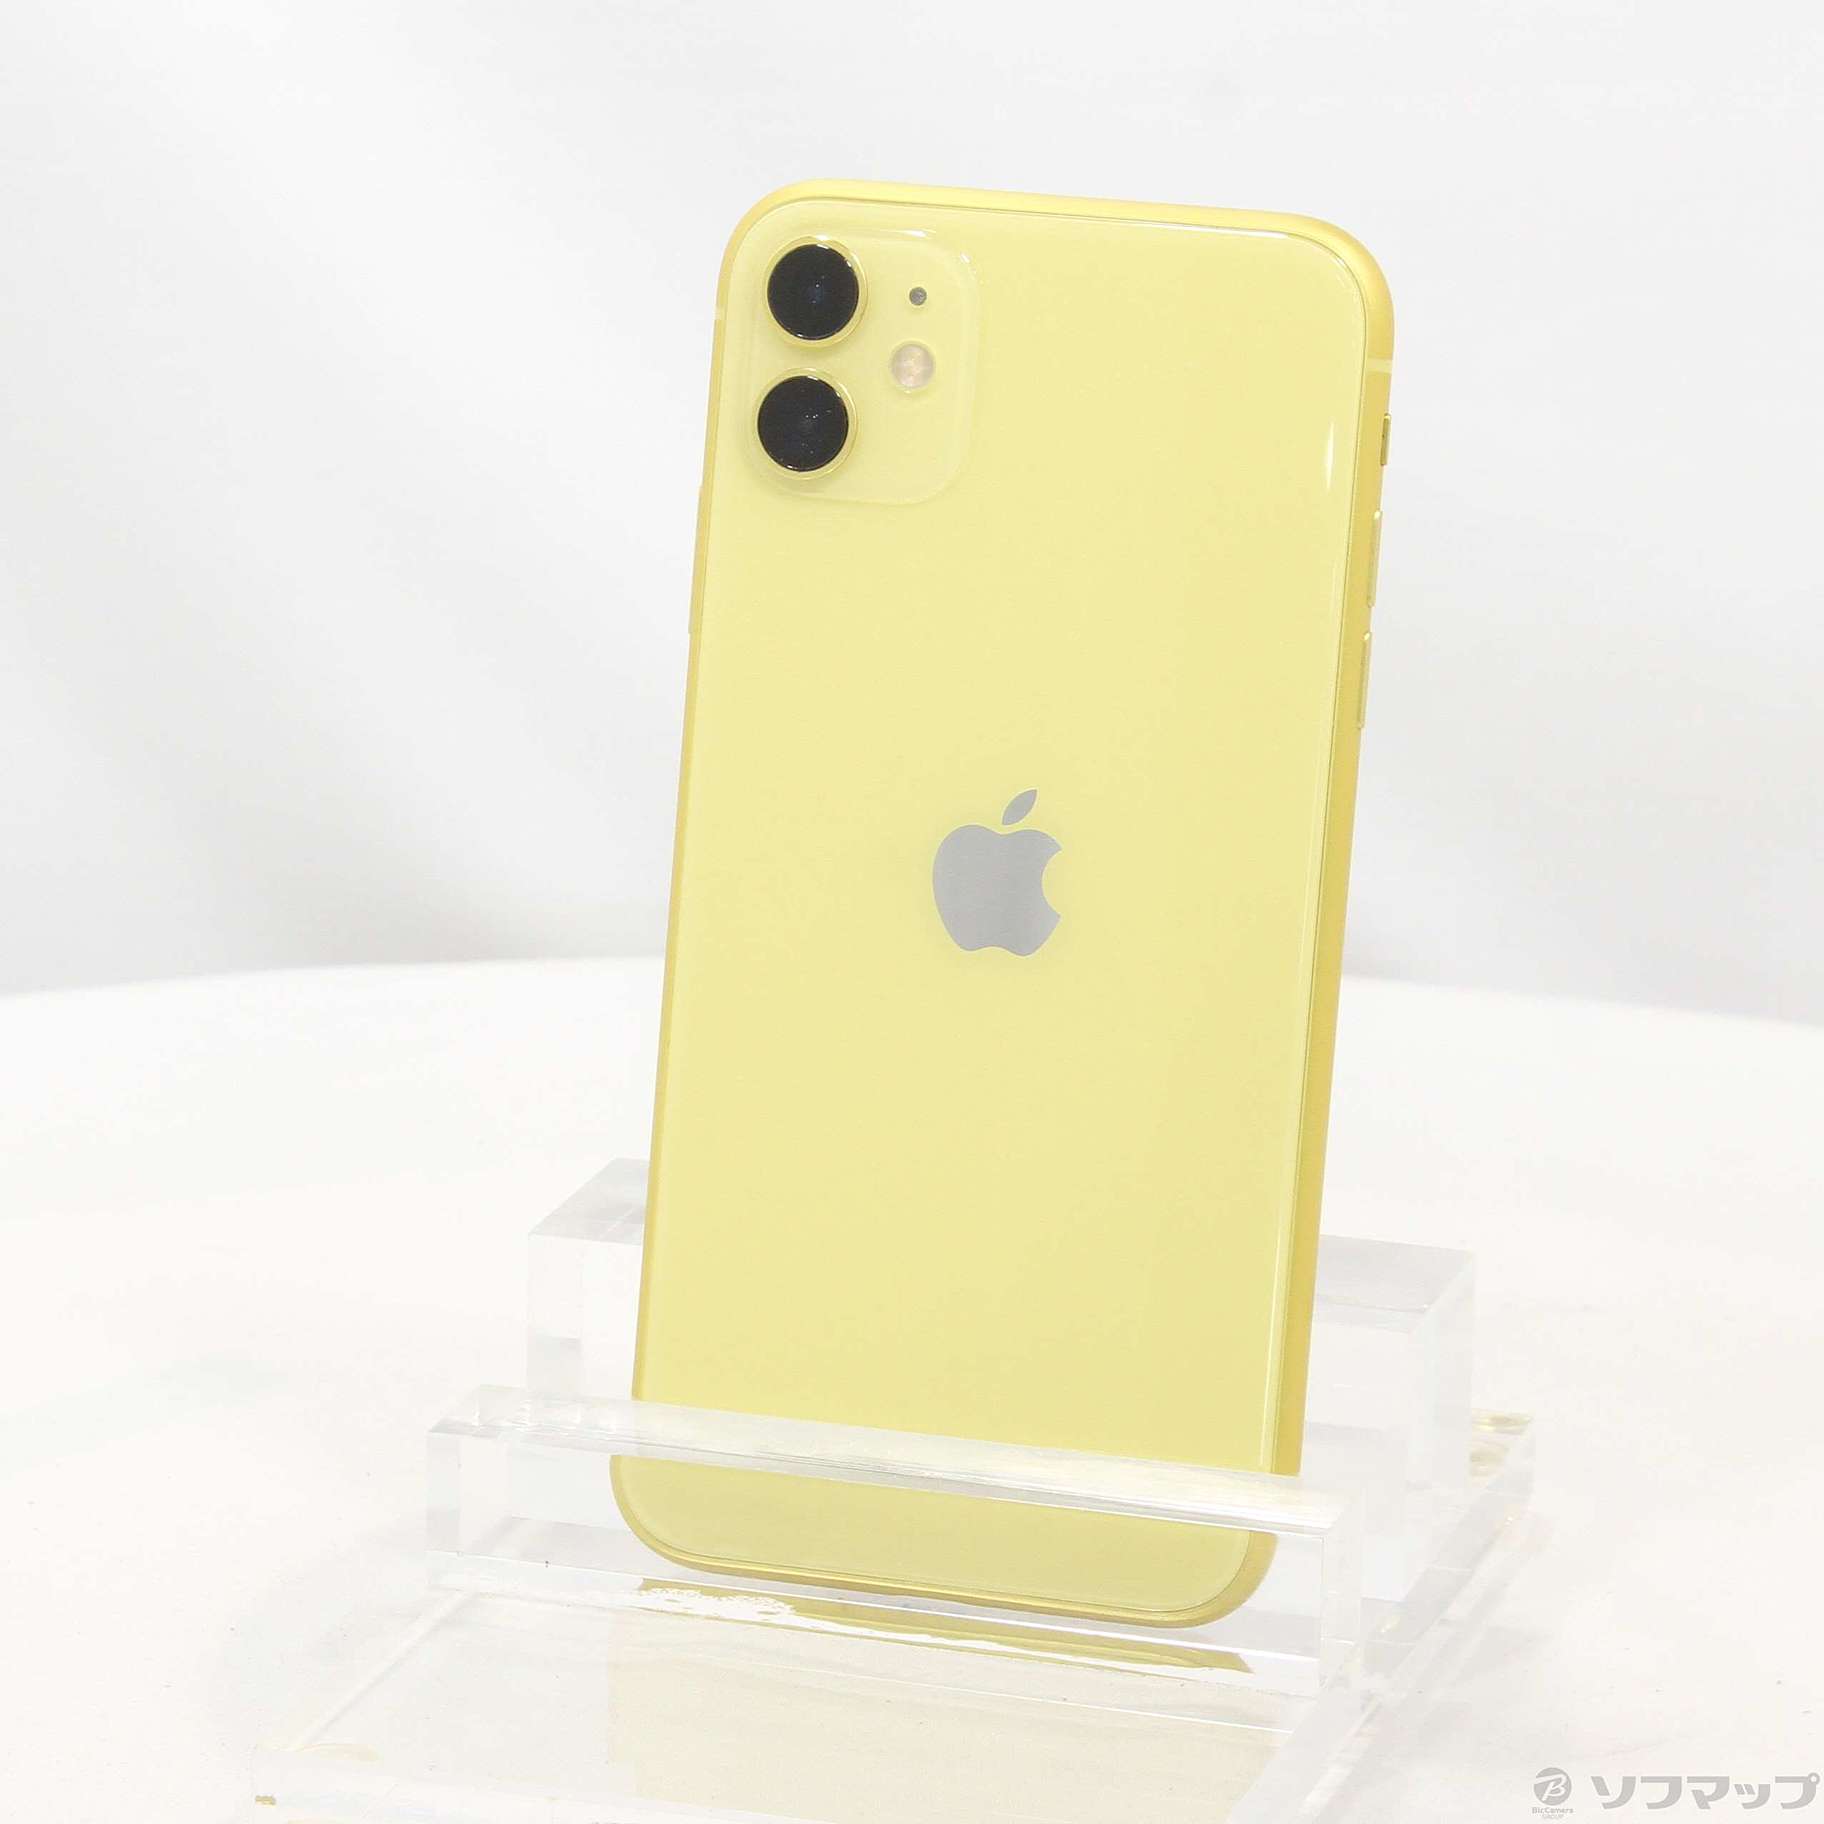 iPhone 11 Yellow SIM フリー 128GB他の商品はこちらからチェック 